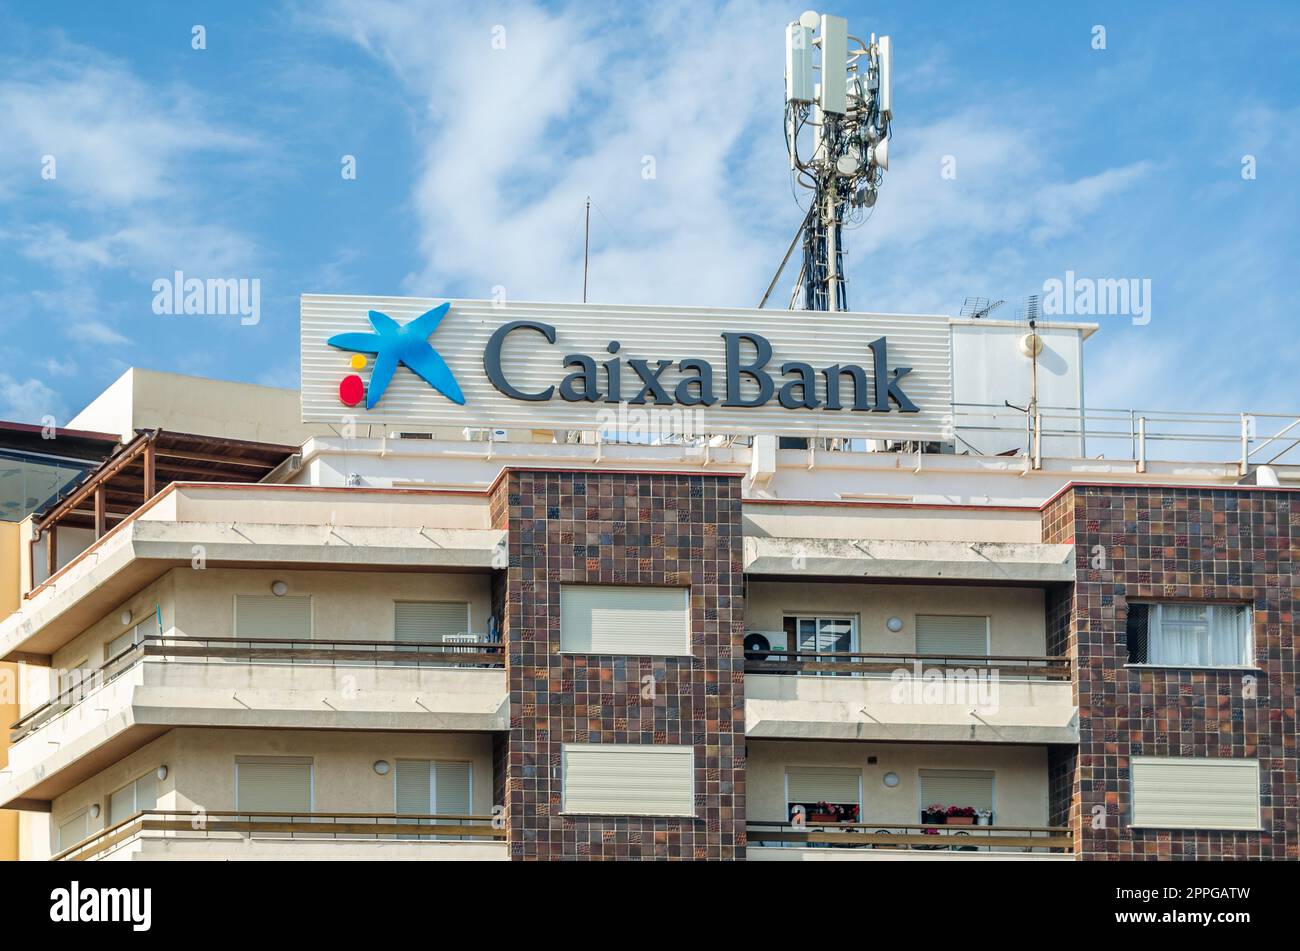 ESTEPONA, SPANIEN - 12. OKTOBER 2021: Logo der Caixa Bank auf einem Gebäude in Estepona, einer Stadt an der Costa del Sol, Südspanien. CaixaBank ist ein spanisches multinationales Finanzdienstleistungsunternehmen Stockfoto